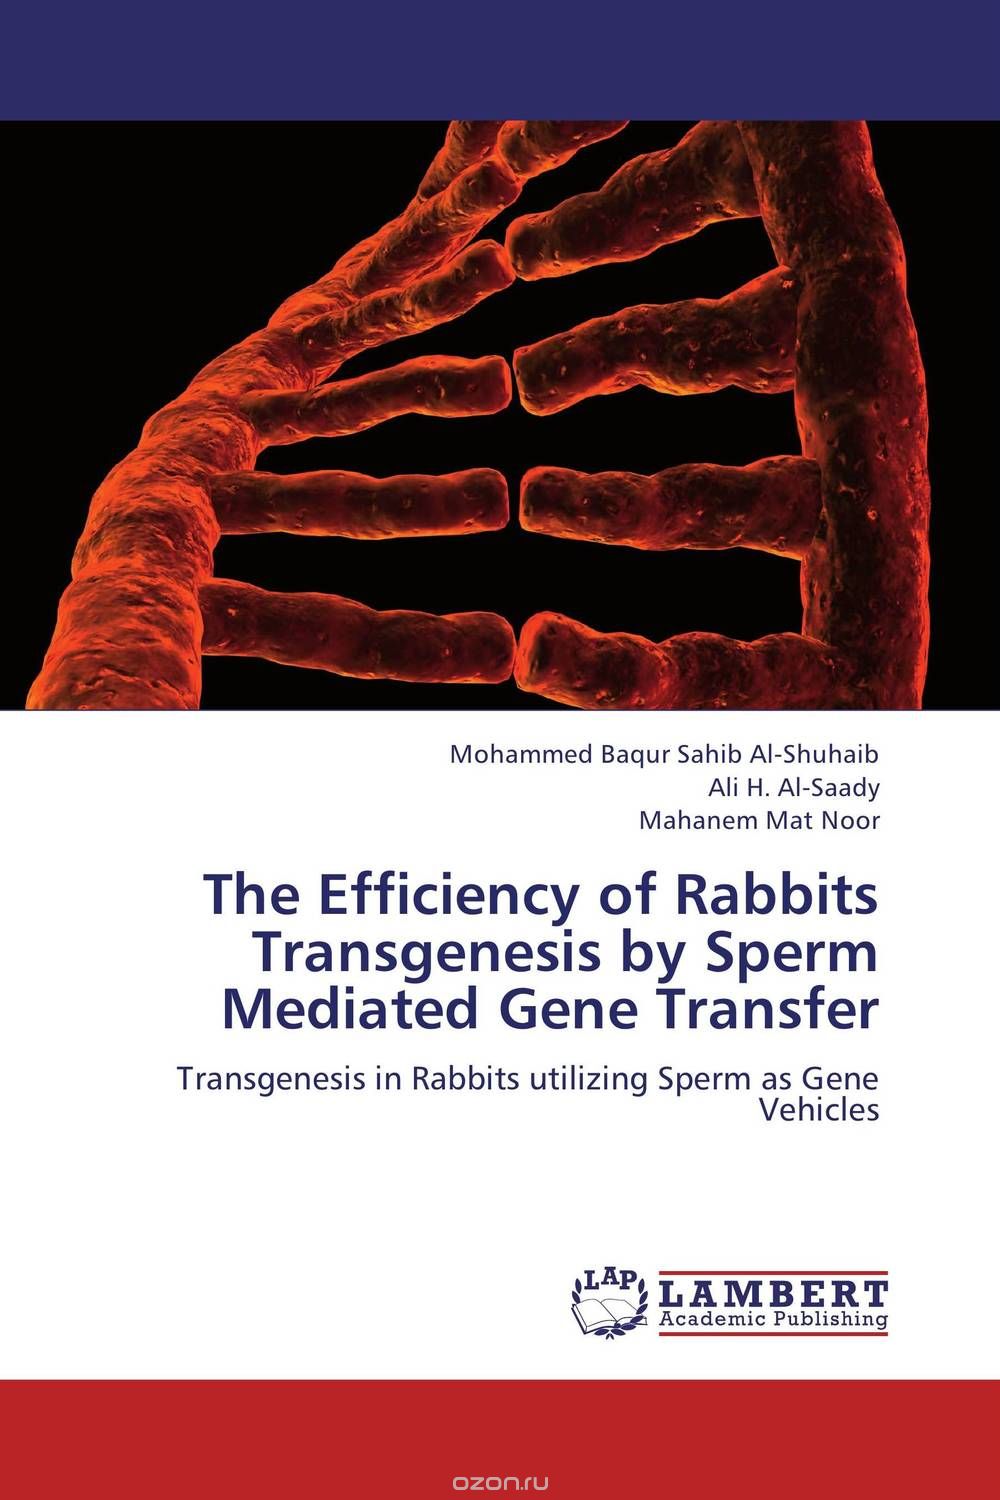 Скачать книгу "The Efficiency of Rabbits Transgenesis by Sperm Mediated Gene Transfer"